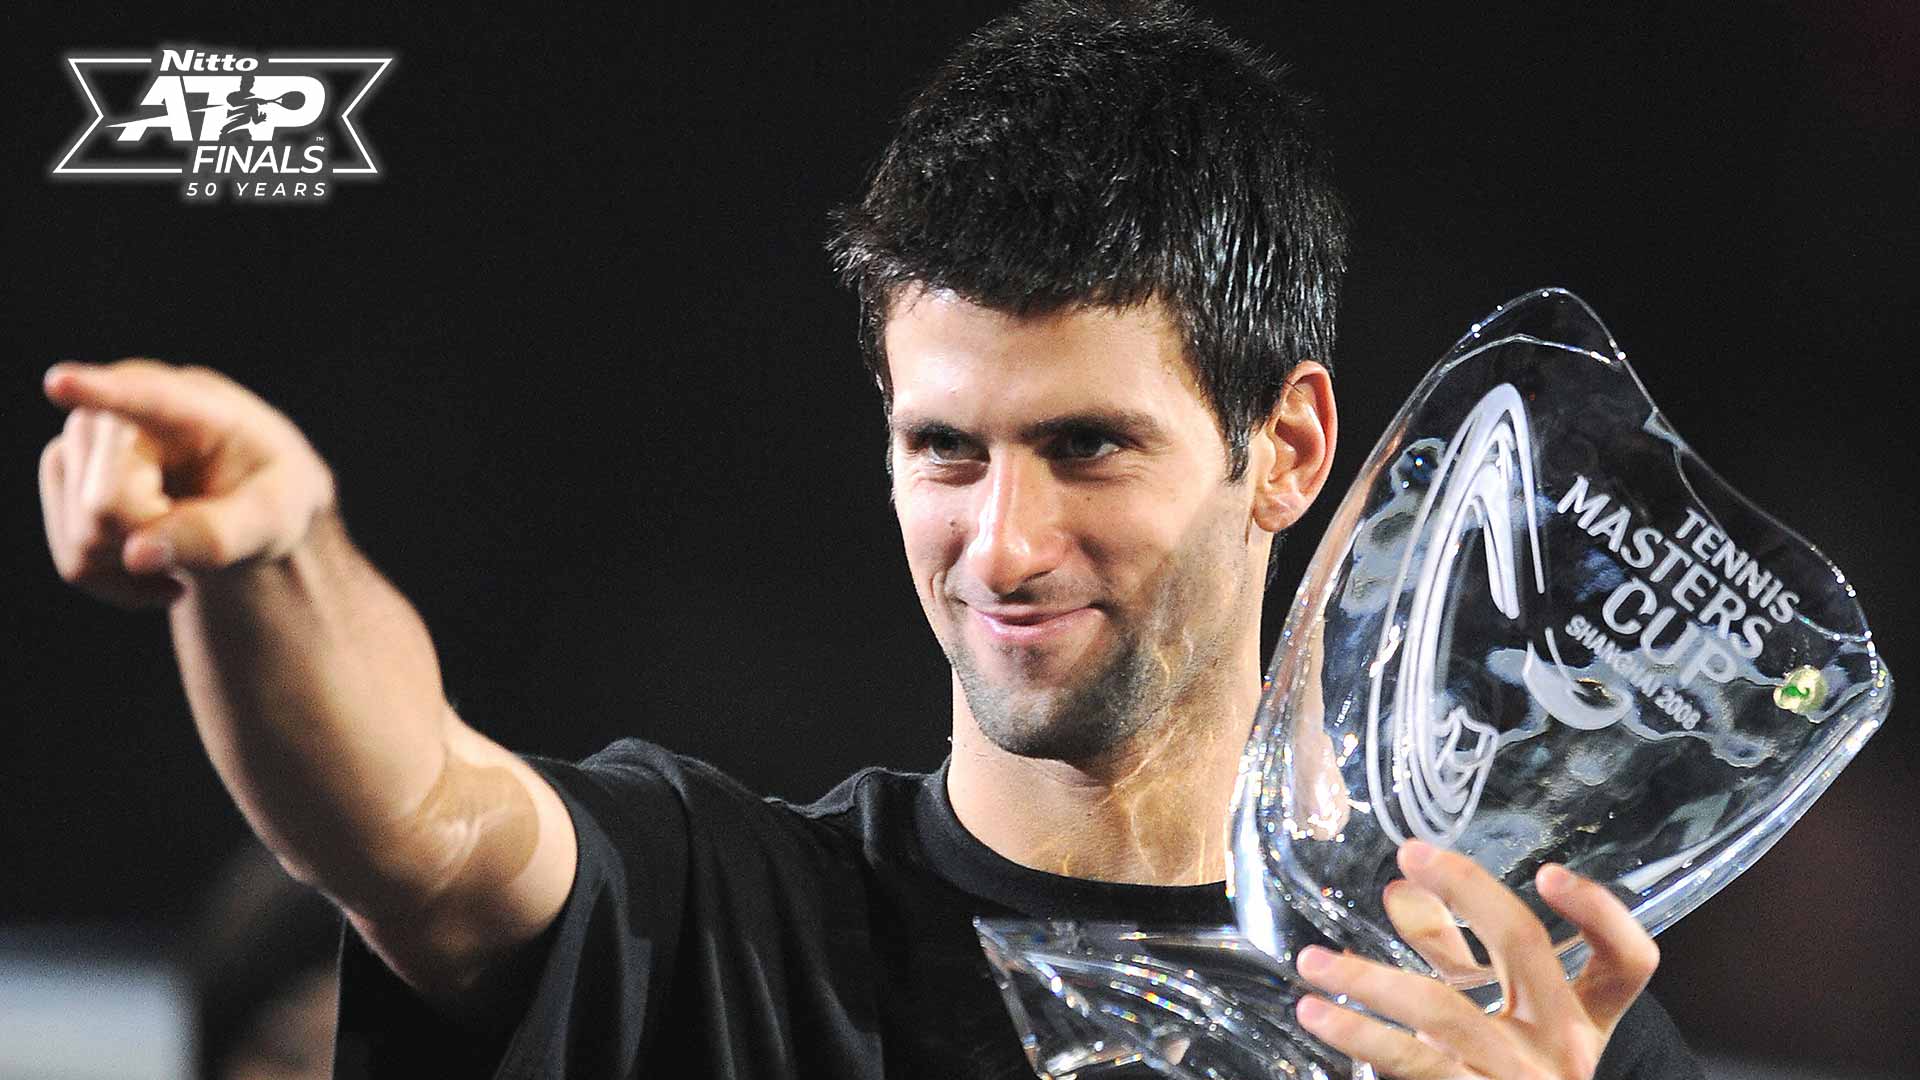 Novak Djokovic levantó el primero de sus cinco títulos Nitto ATP Finals en Shanghái en 2008.